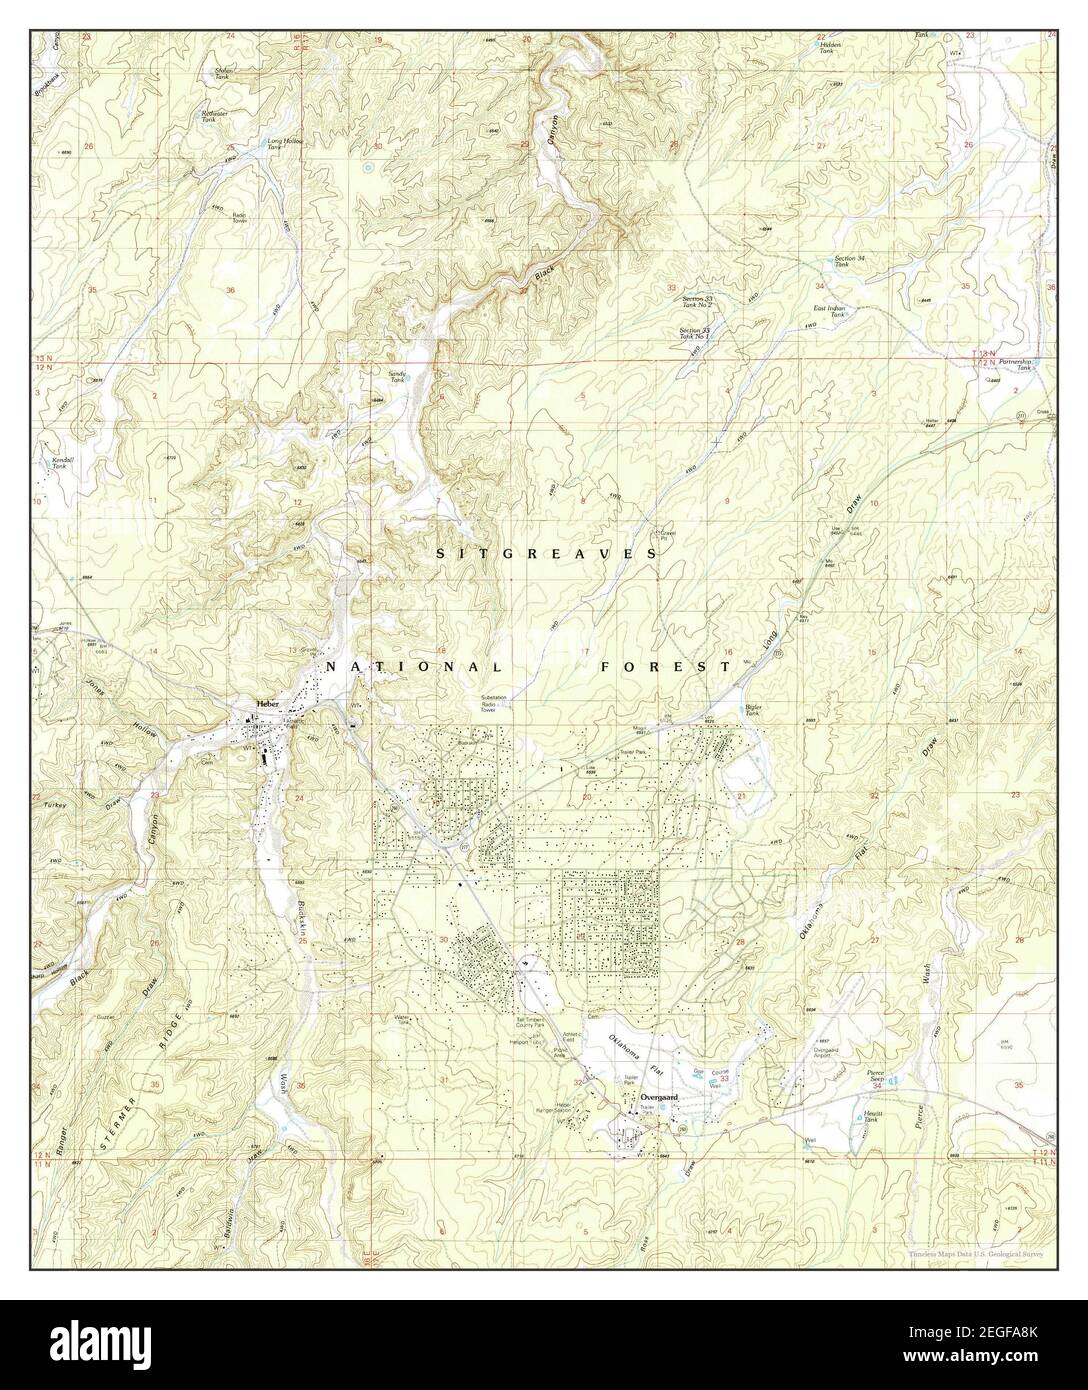 Heber Arizona Map 1990 124000 United States Of America By Timeless Maps Data Us Geological Survey 2EGFA8K 